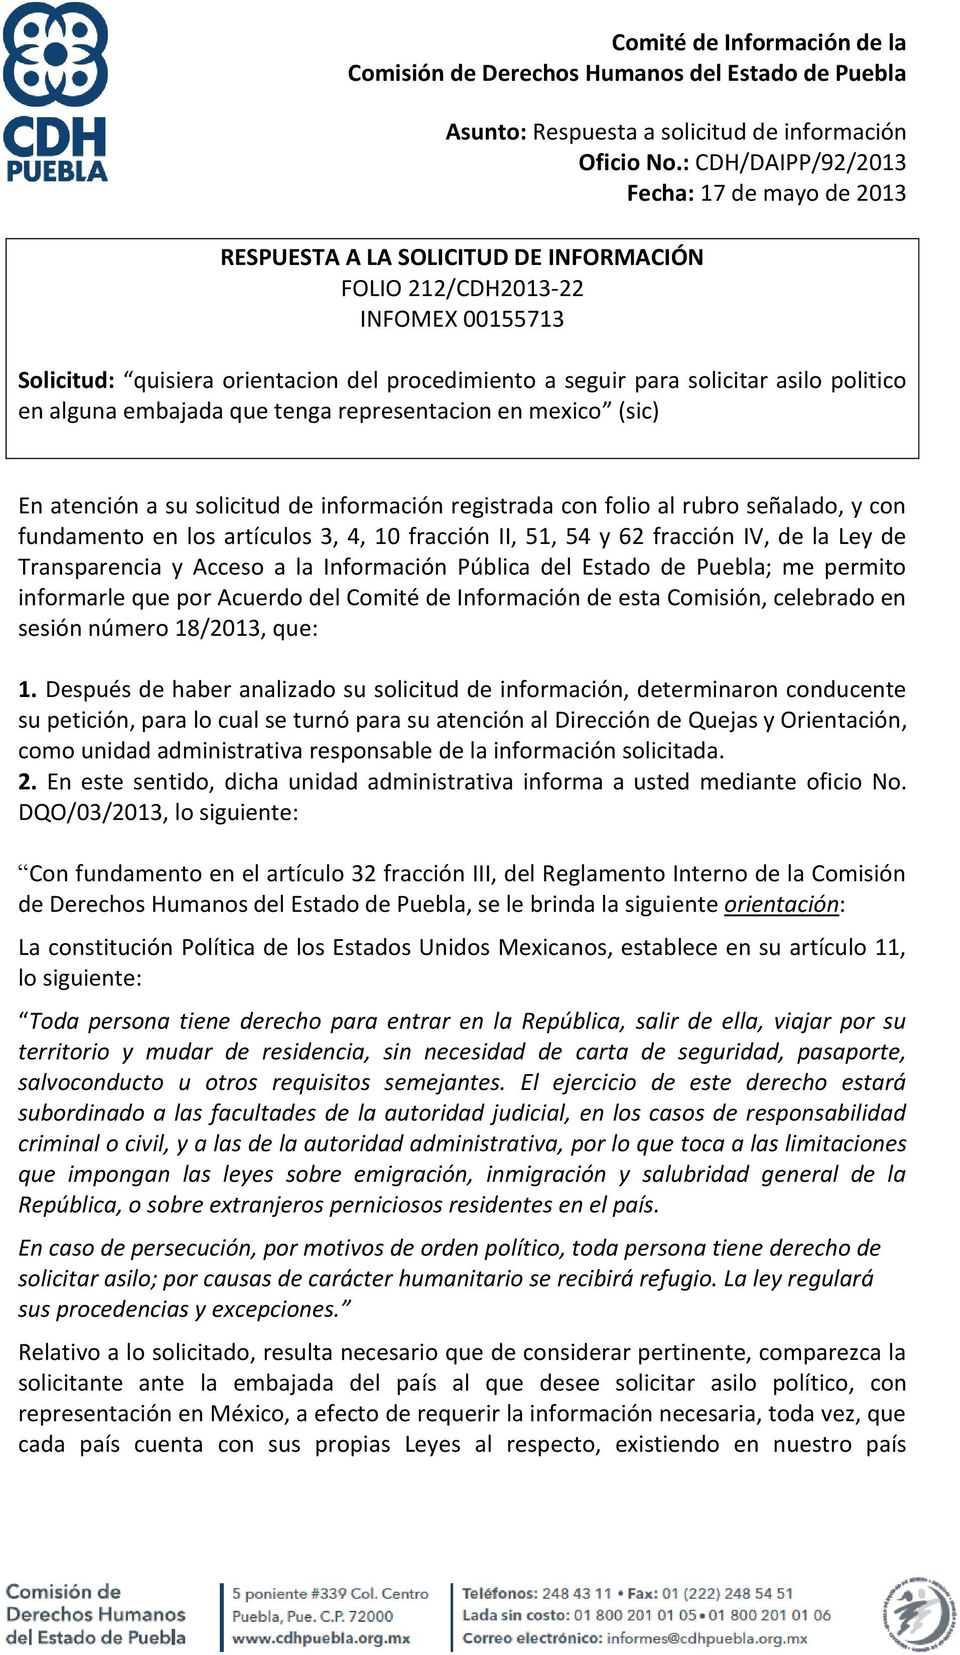 Ley de Transparencia y Acceso a la Información Pública del Estado de Puebla; me permito informarle que por Acuerdo del Comité de Información de esta Comisión, celebrado en sesión número 18/2013, que: